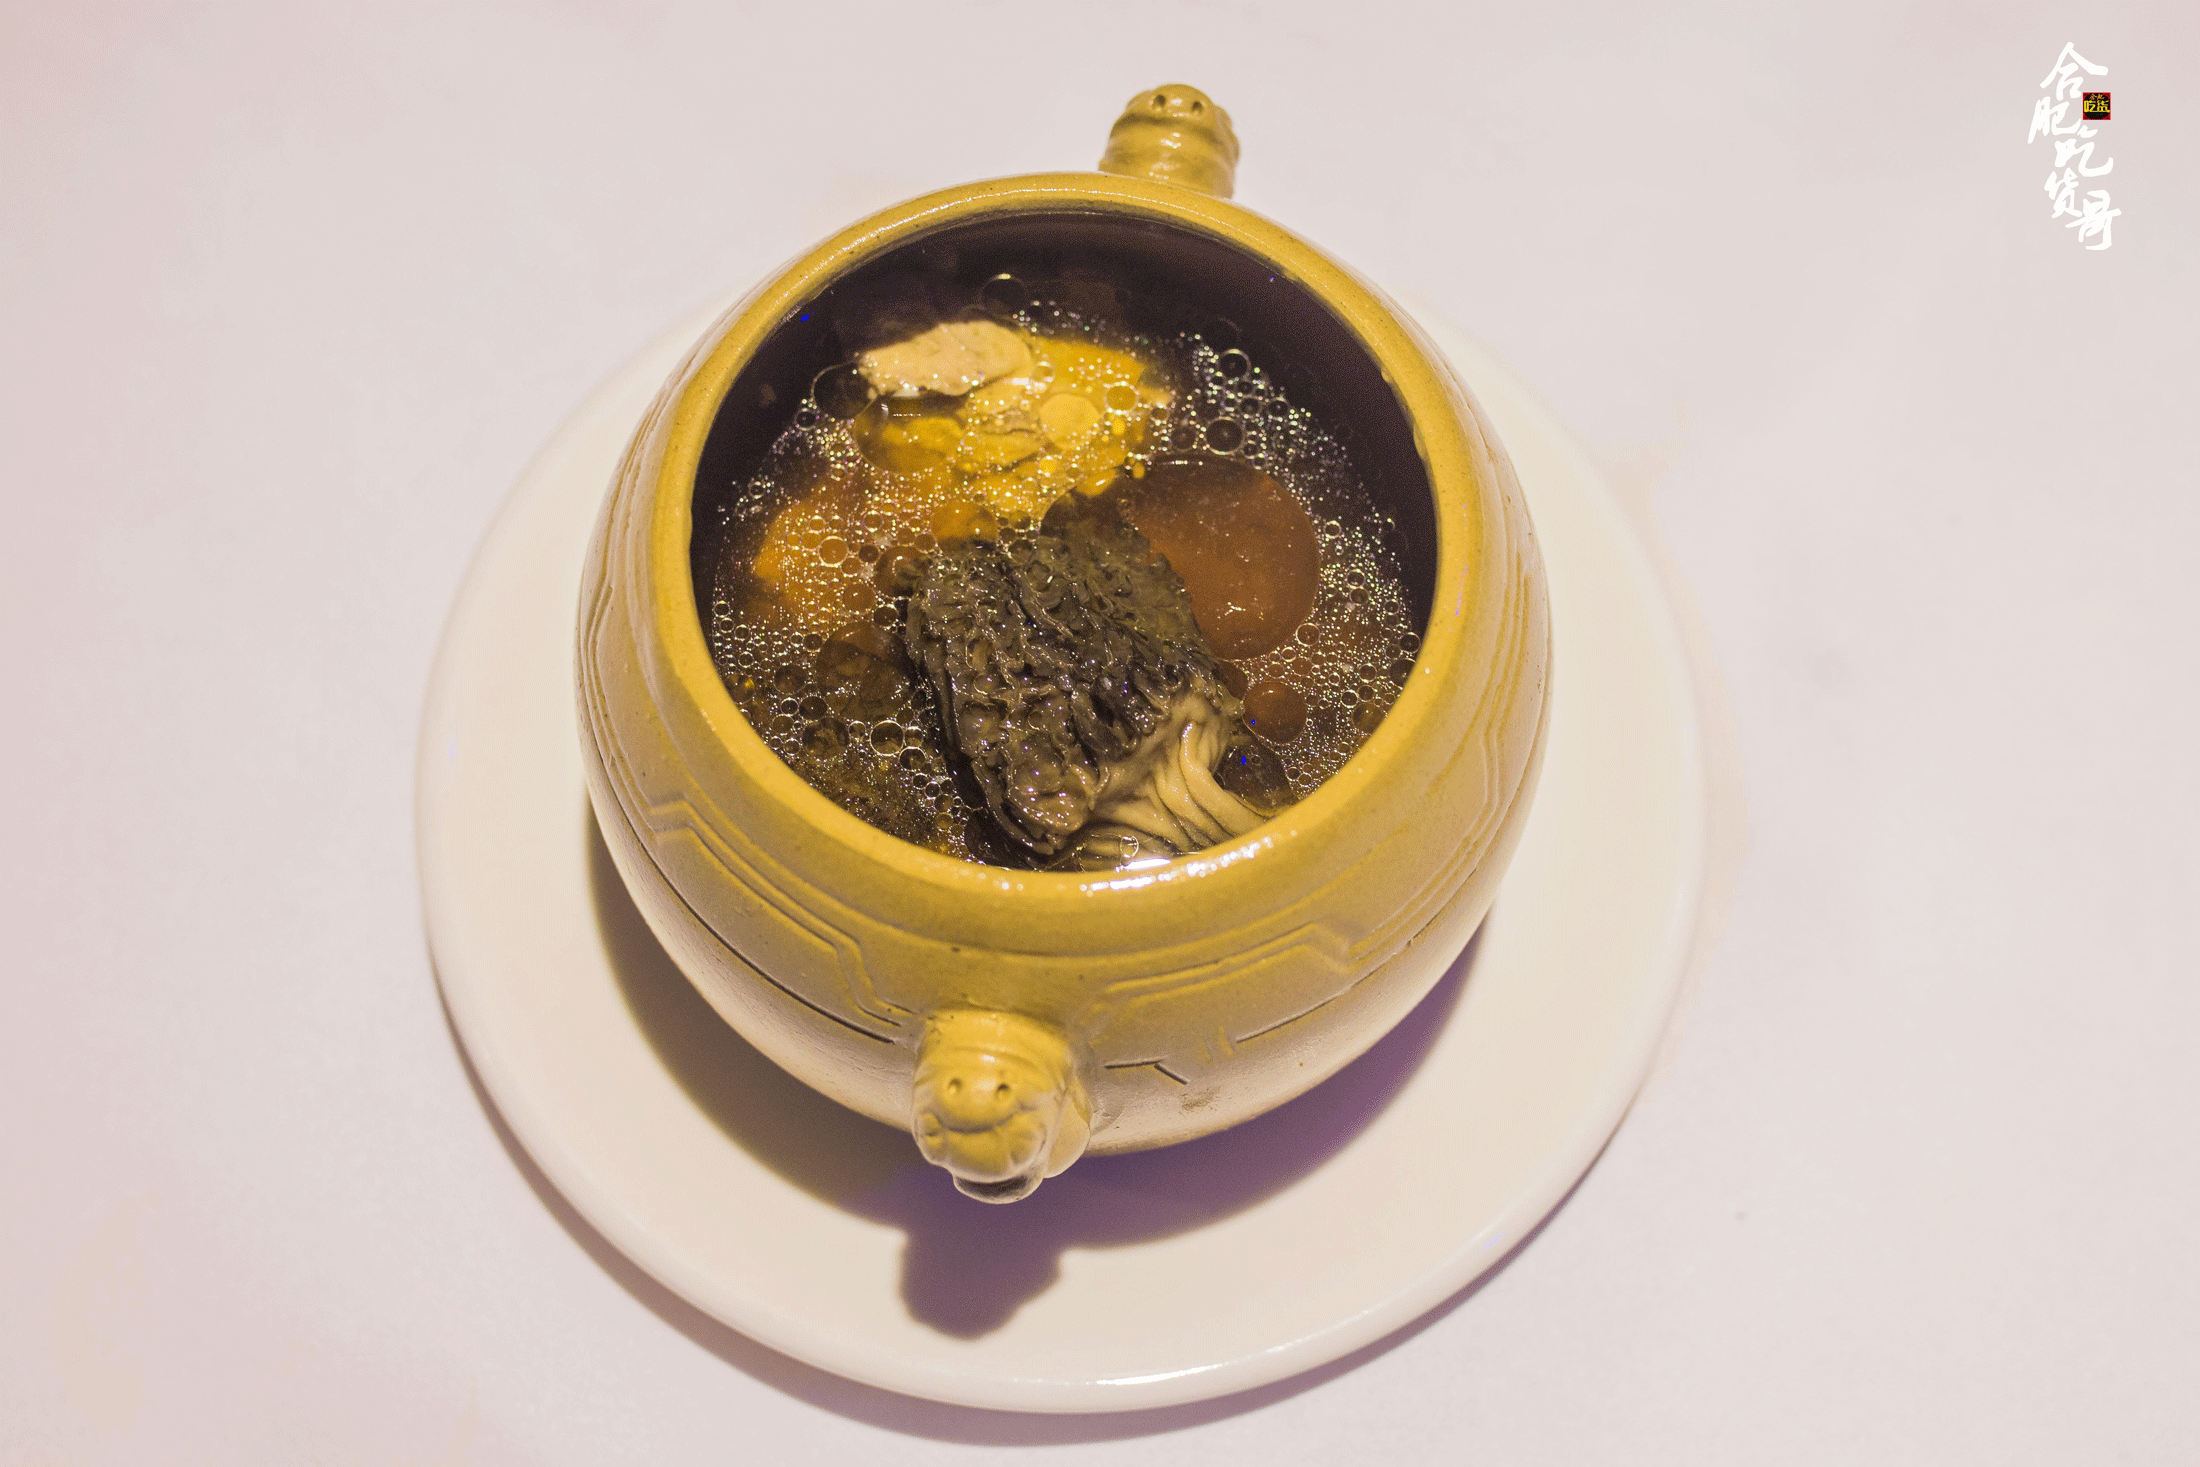 養生海馬瑤柱炖羊肚菌炖盅隔水炖,与大锅炖后分装,完全是两种不同的